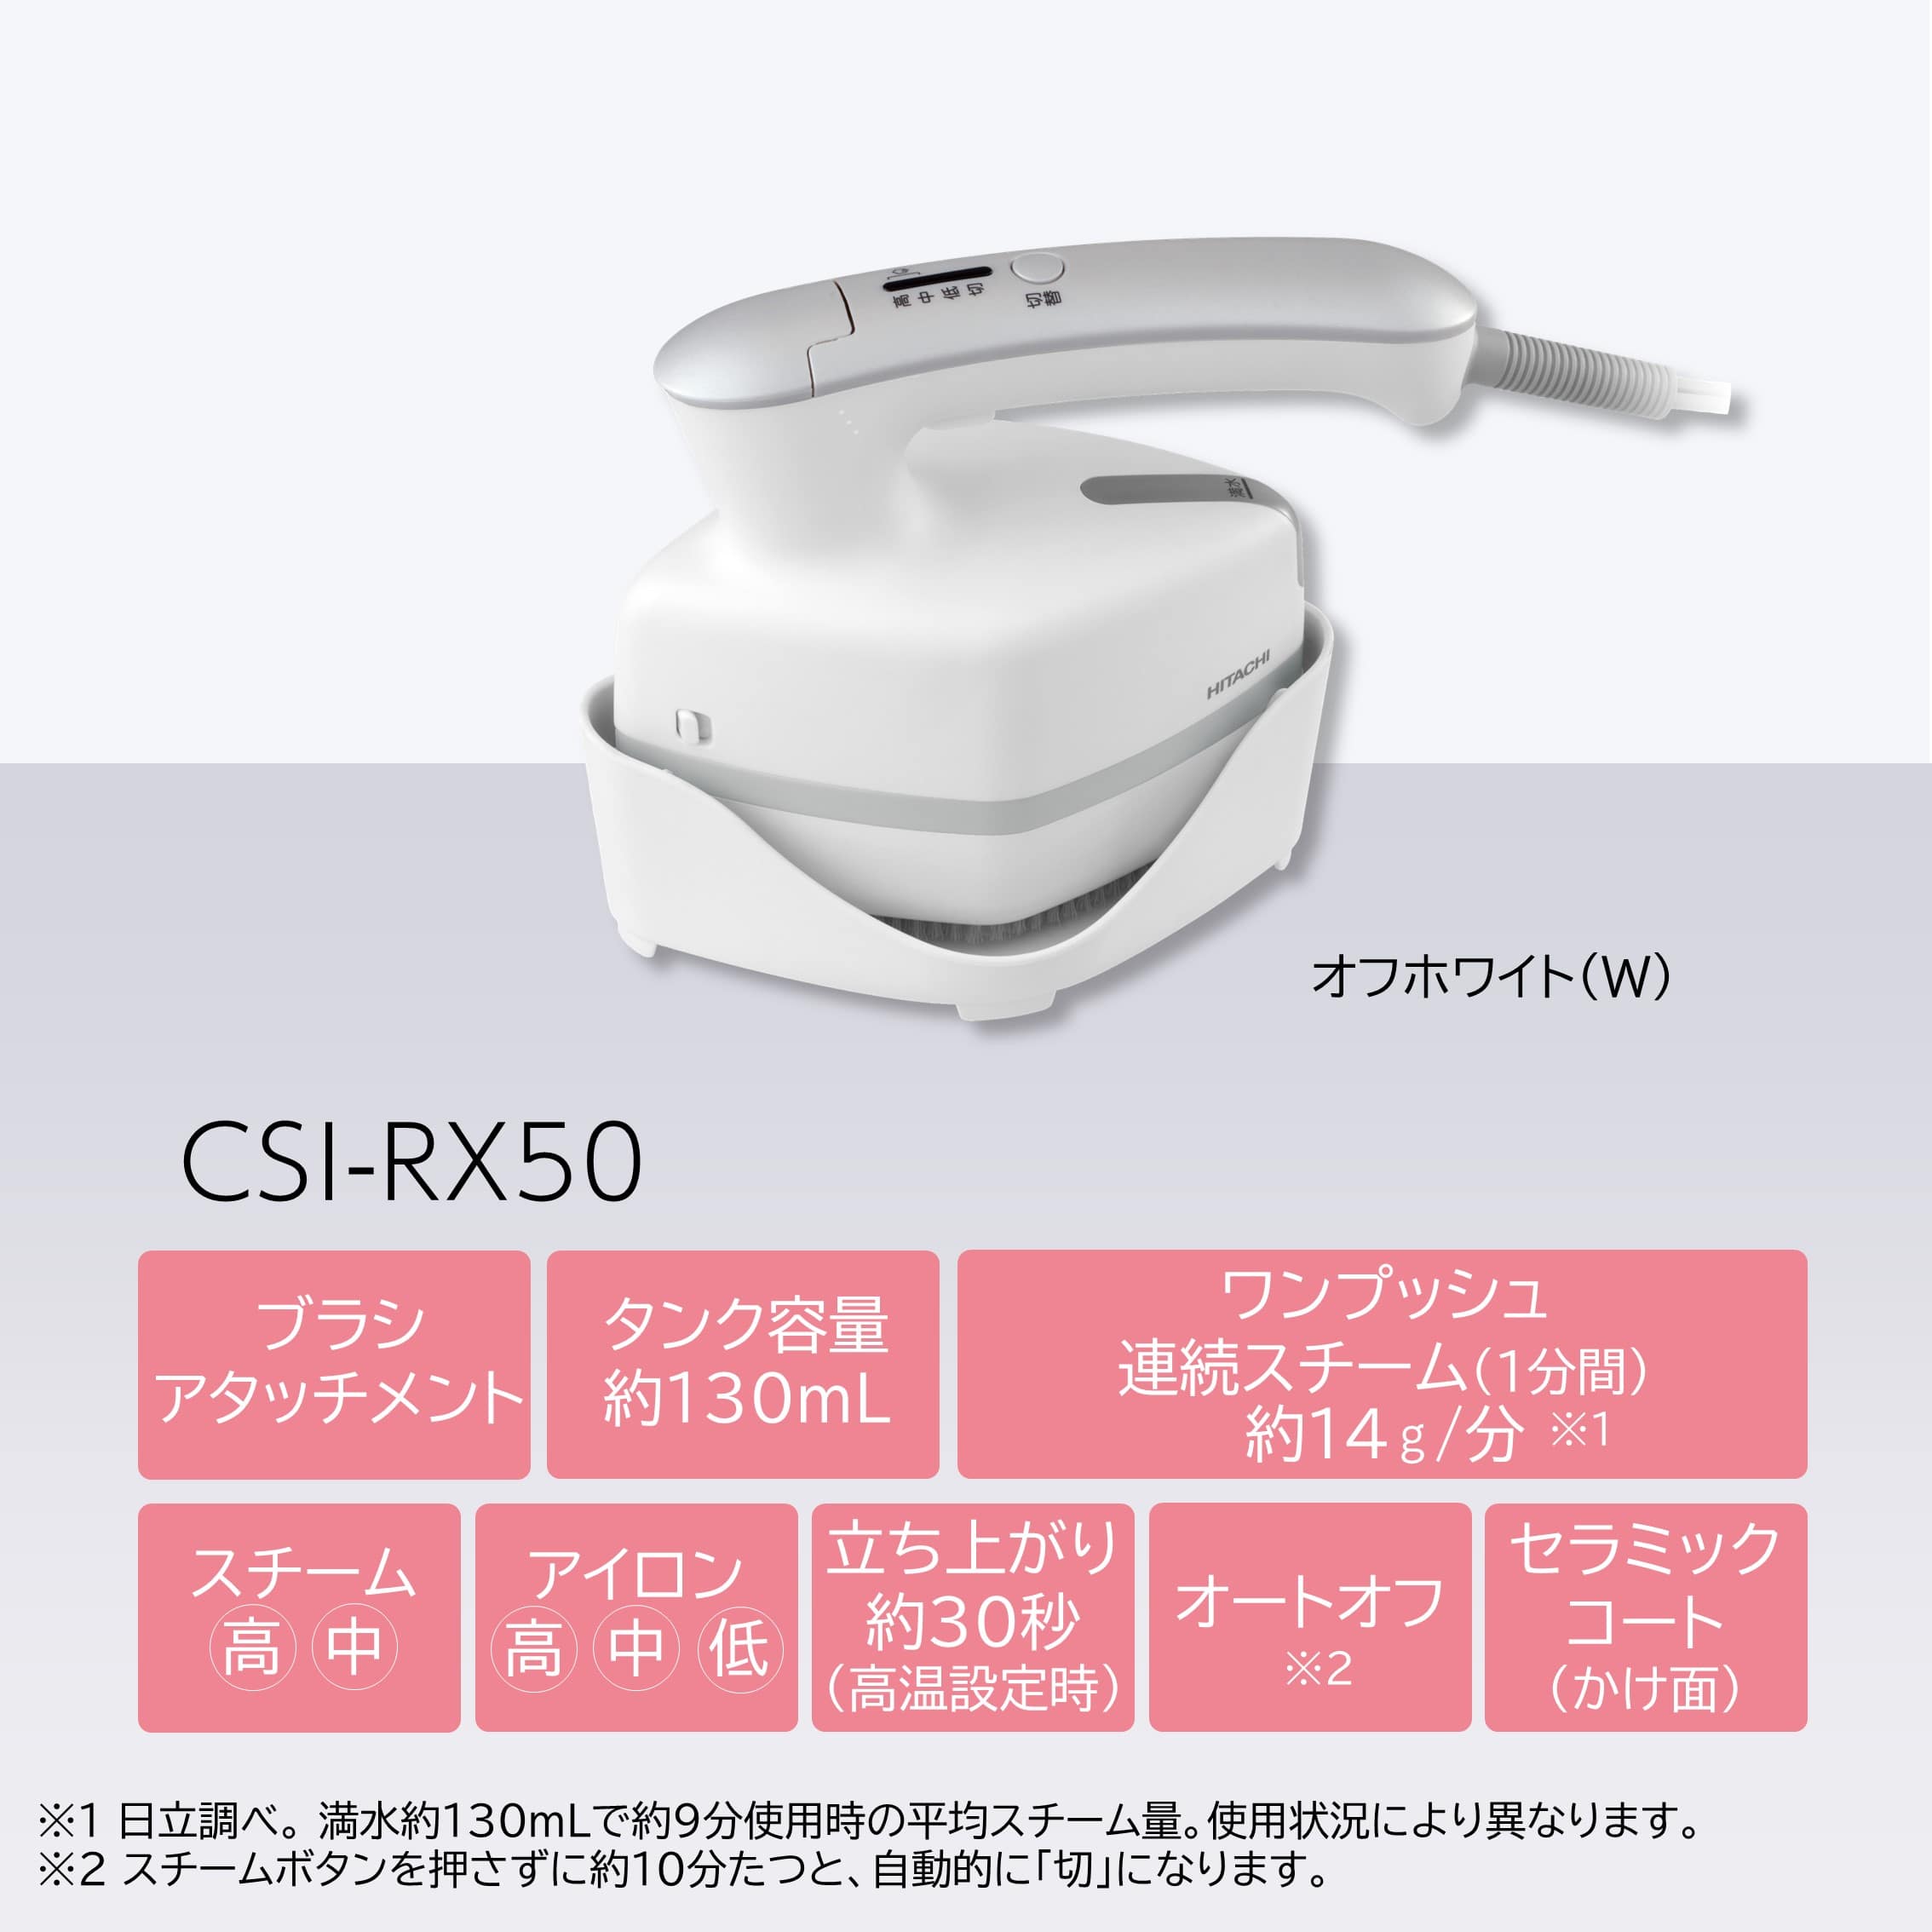 衣類スチーマー CSI-RX50 W(オフホワイト): 生活家電/日立の家電品 